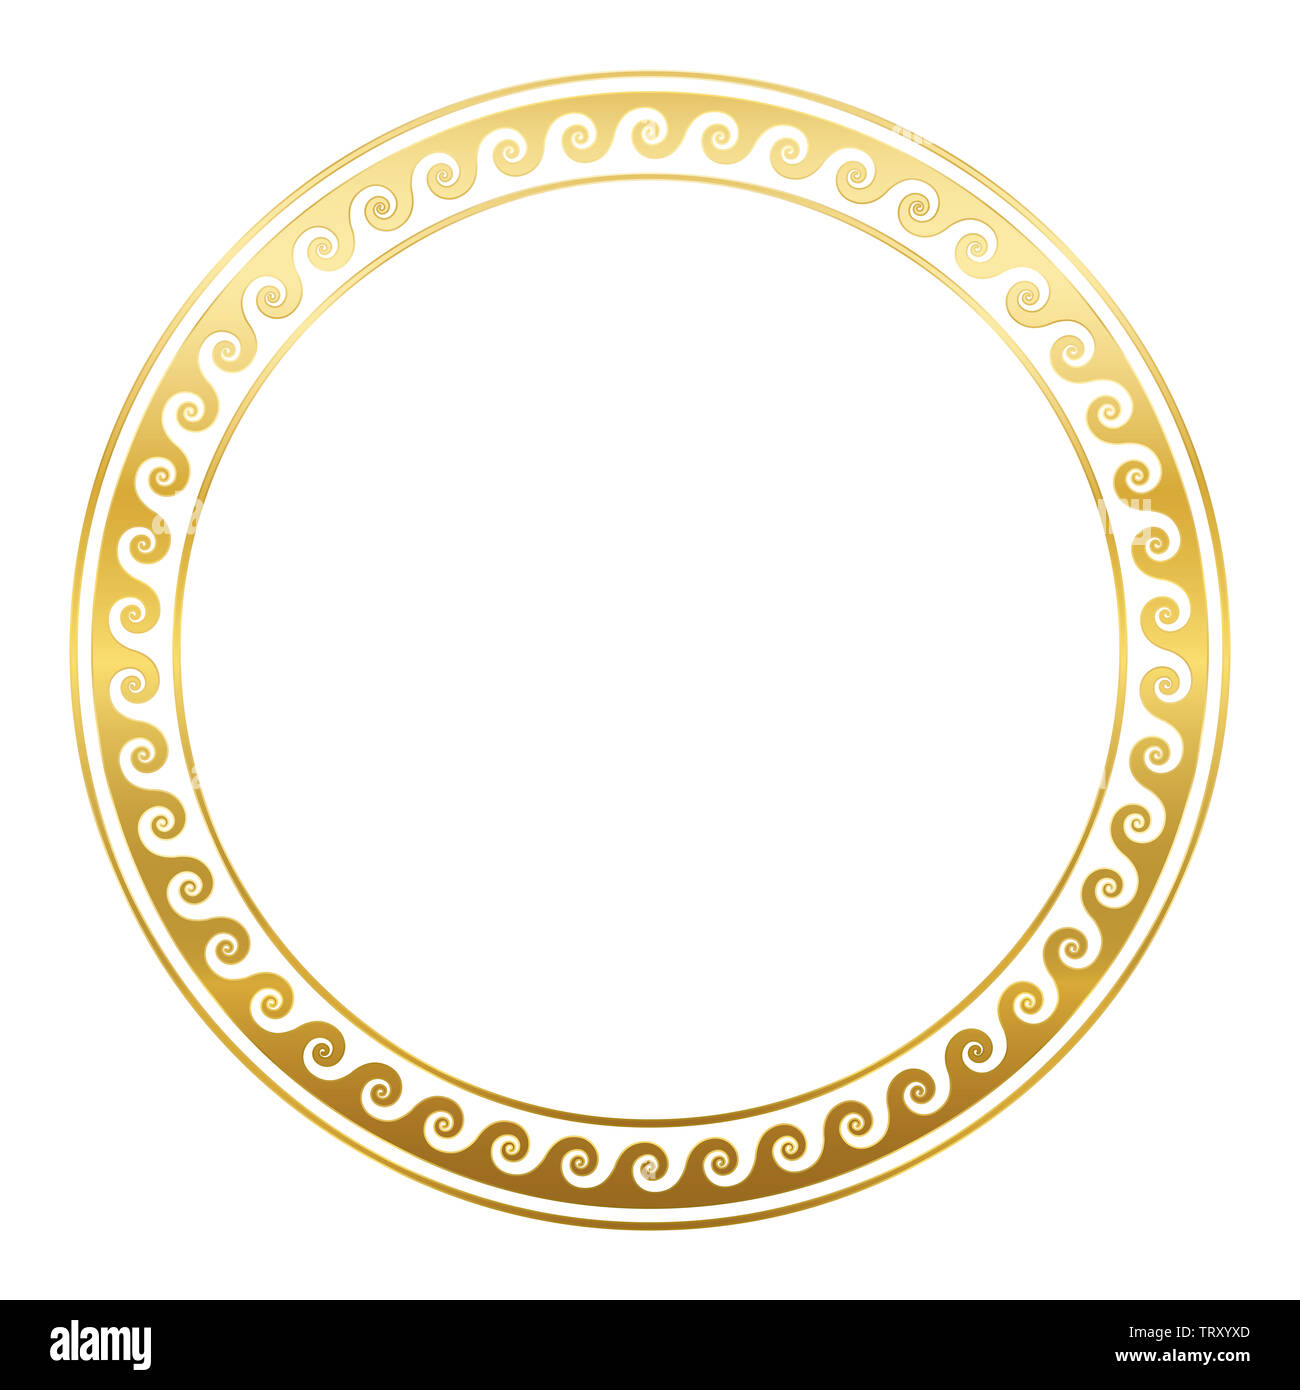 Bastidor del círculo dorado con espirales o cuernos, patrón griego sin fisuras. Borde decorativo, construidos a partir de líneas continuas, formadas en un motivo repetido. Foto de stock